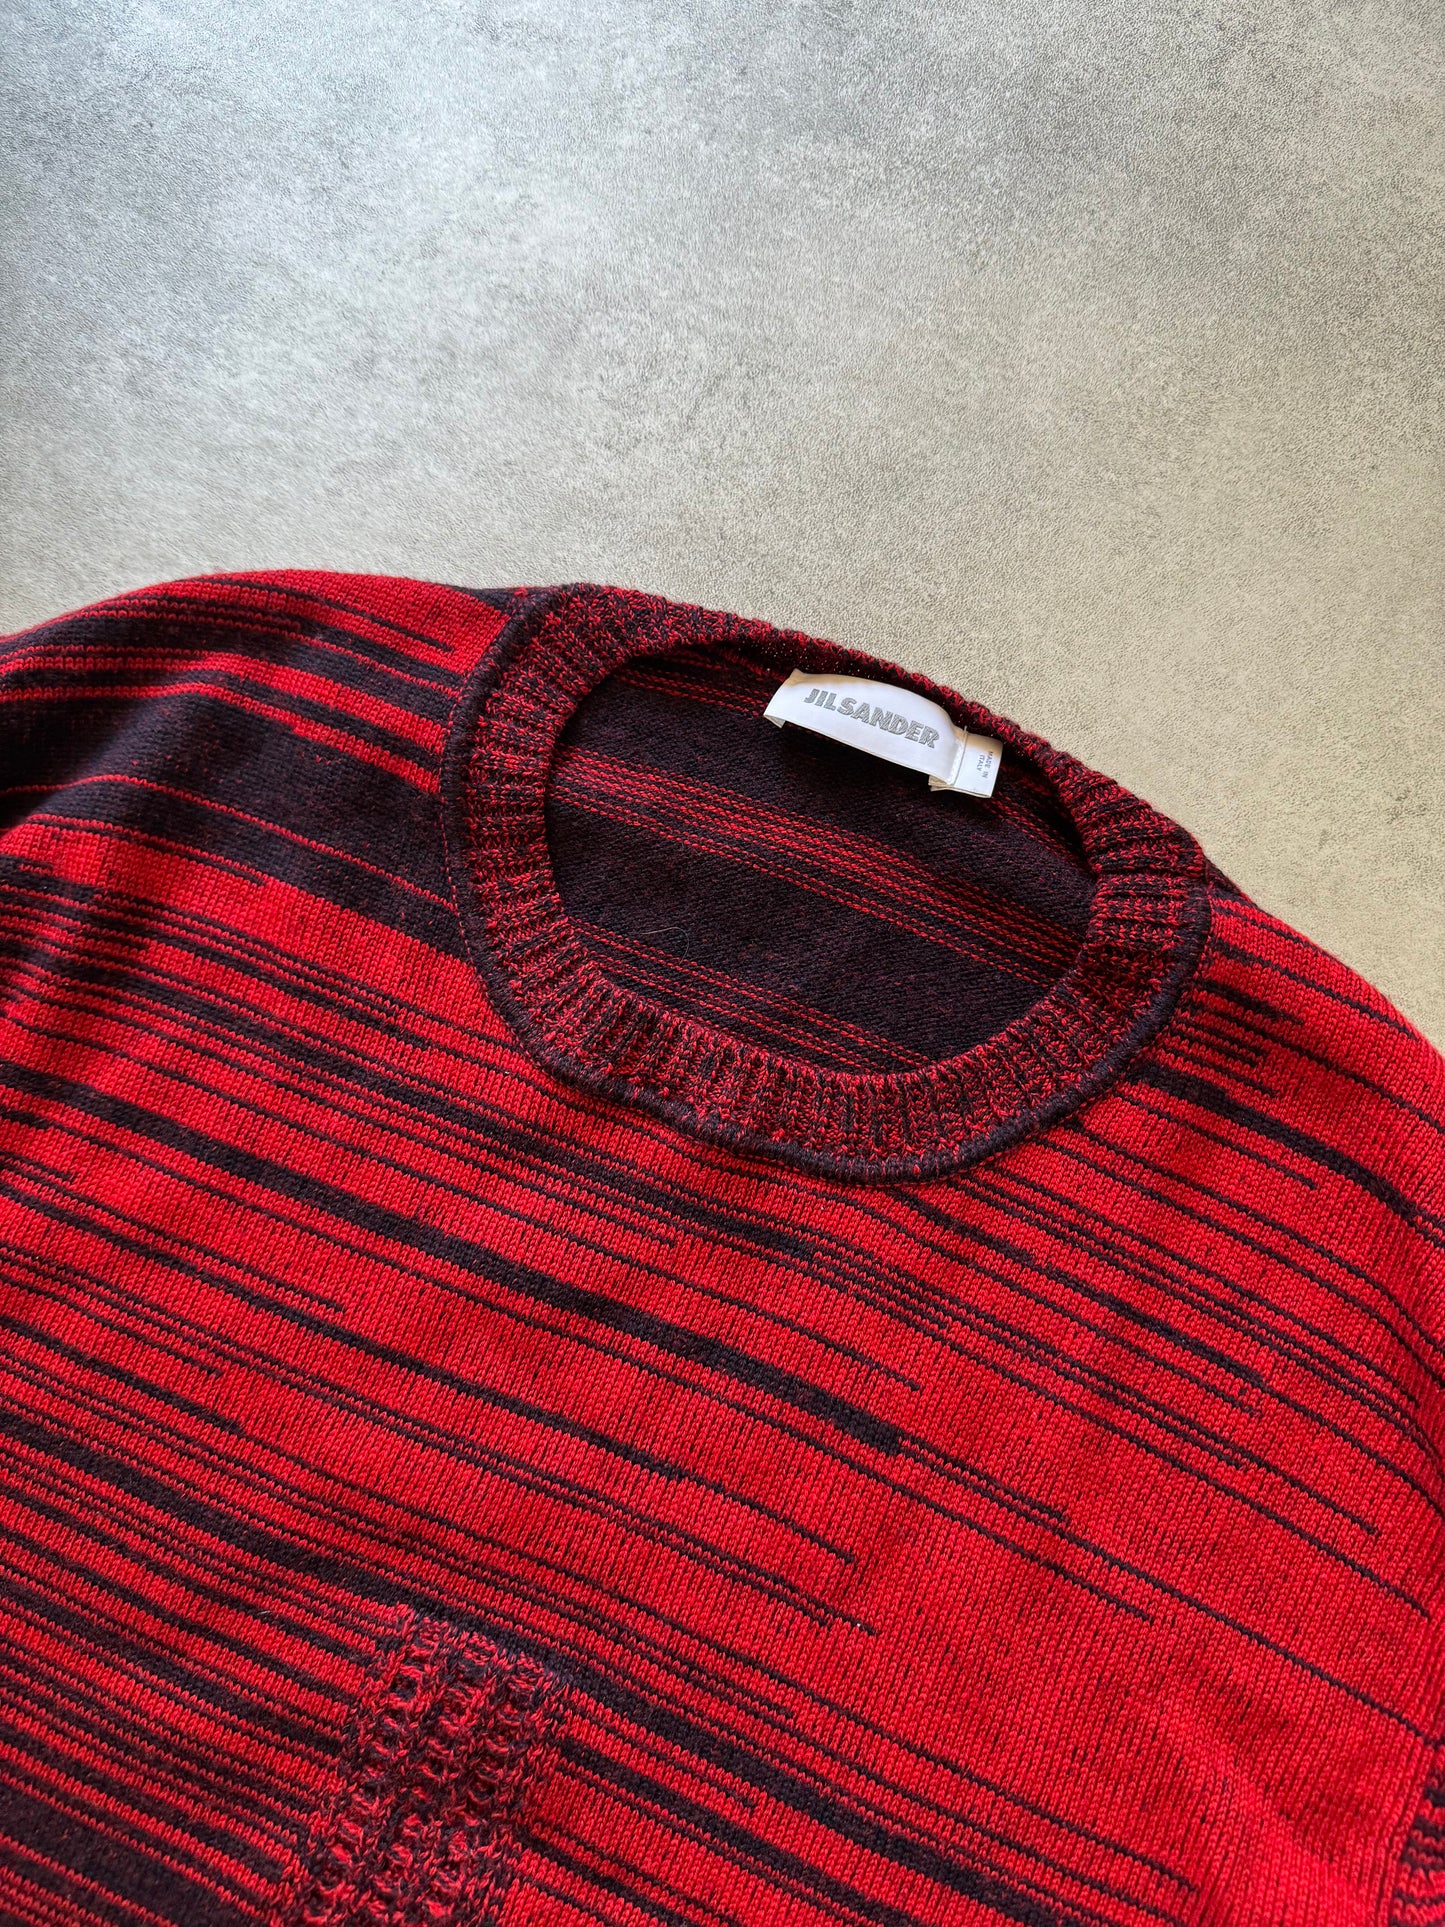 2010s Jil Sander Striped Devil Sweater  (L) - 7